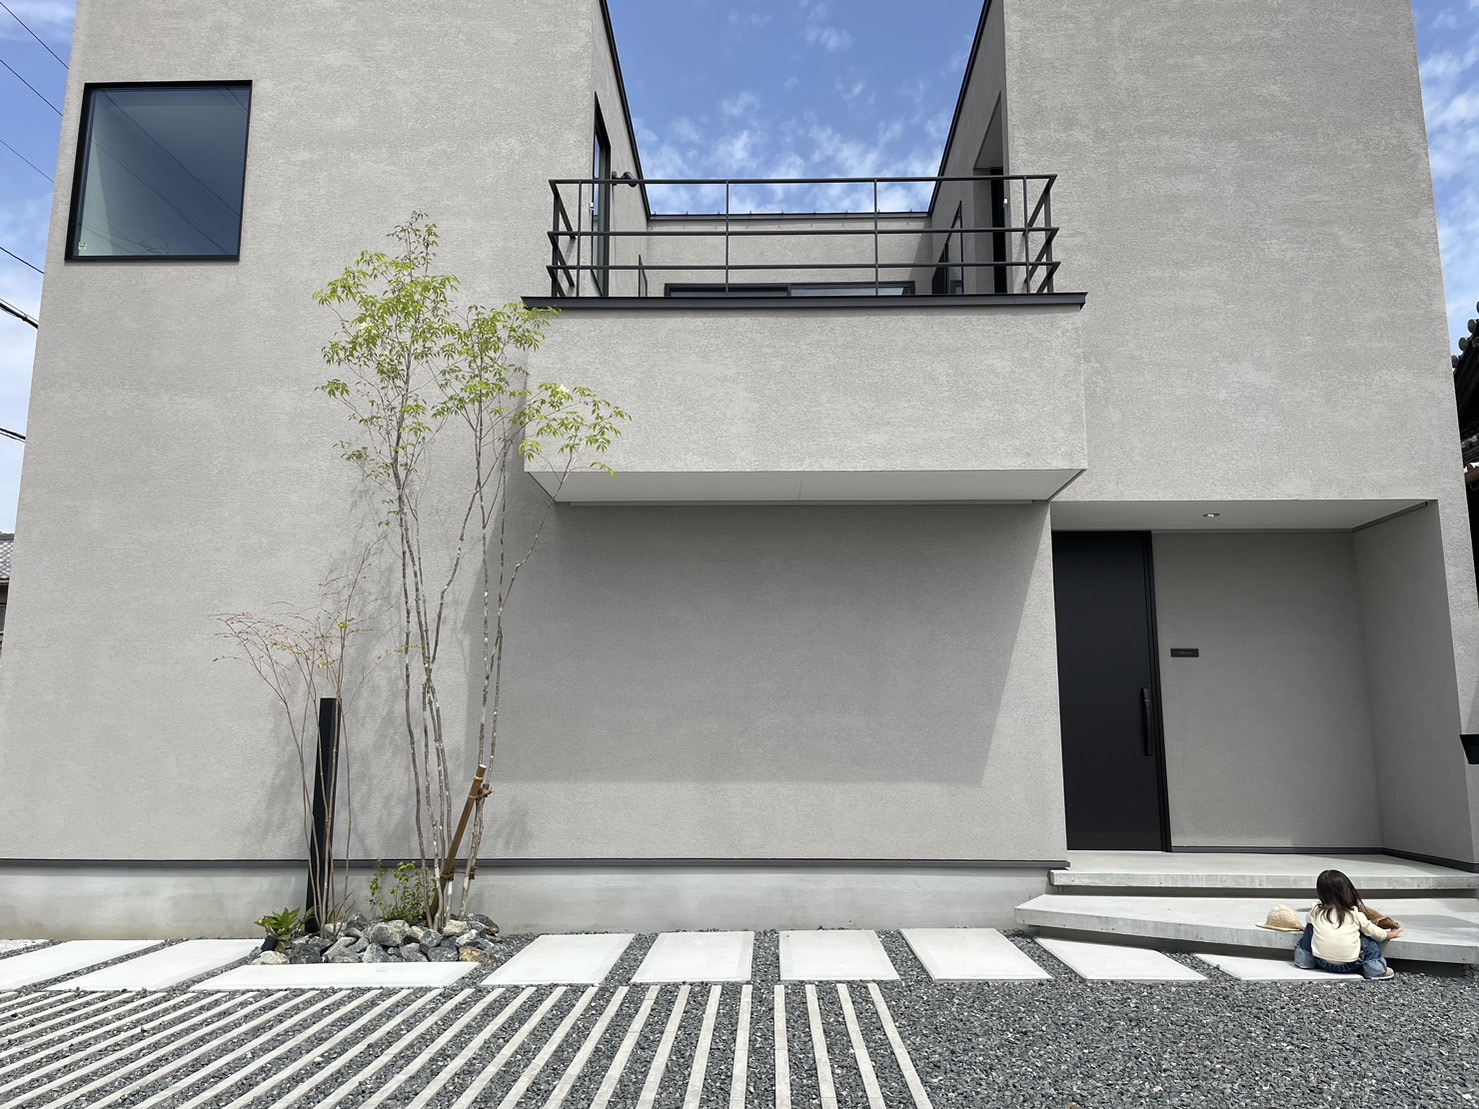 大阪府箕面市の外構会社「株式会社リーフ」のブログです。半年前に家を新築した設計STAFFの外構を紹介しています。